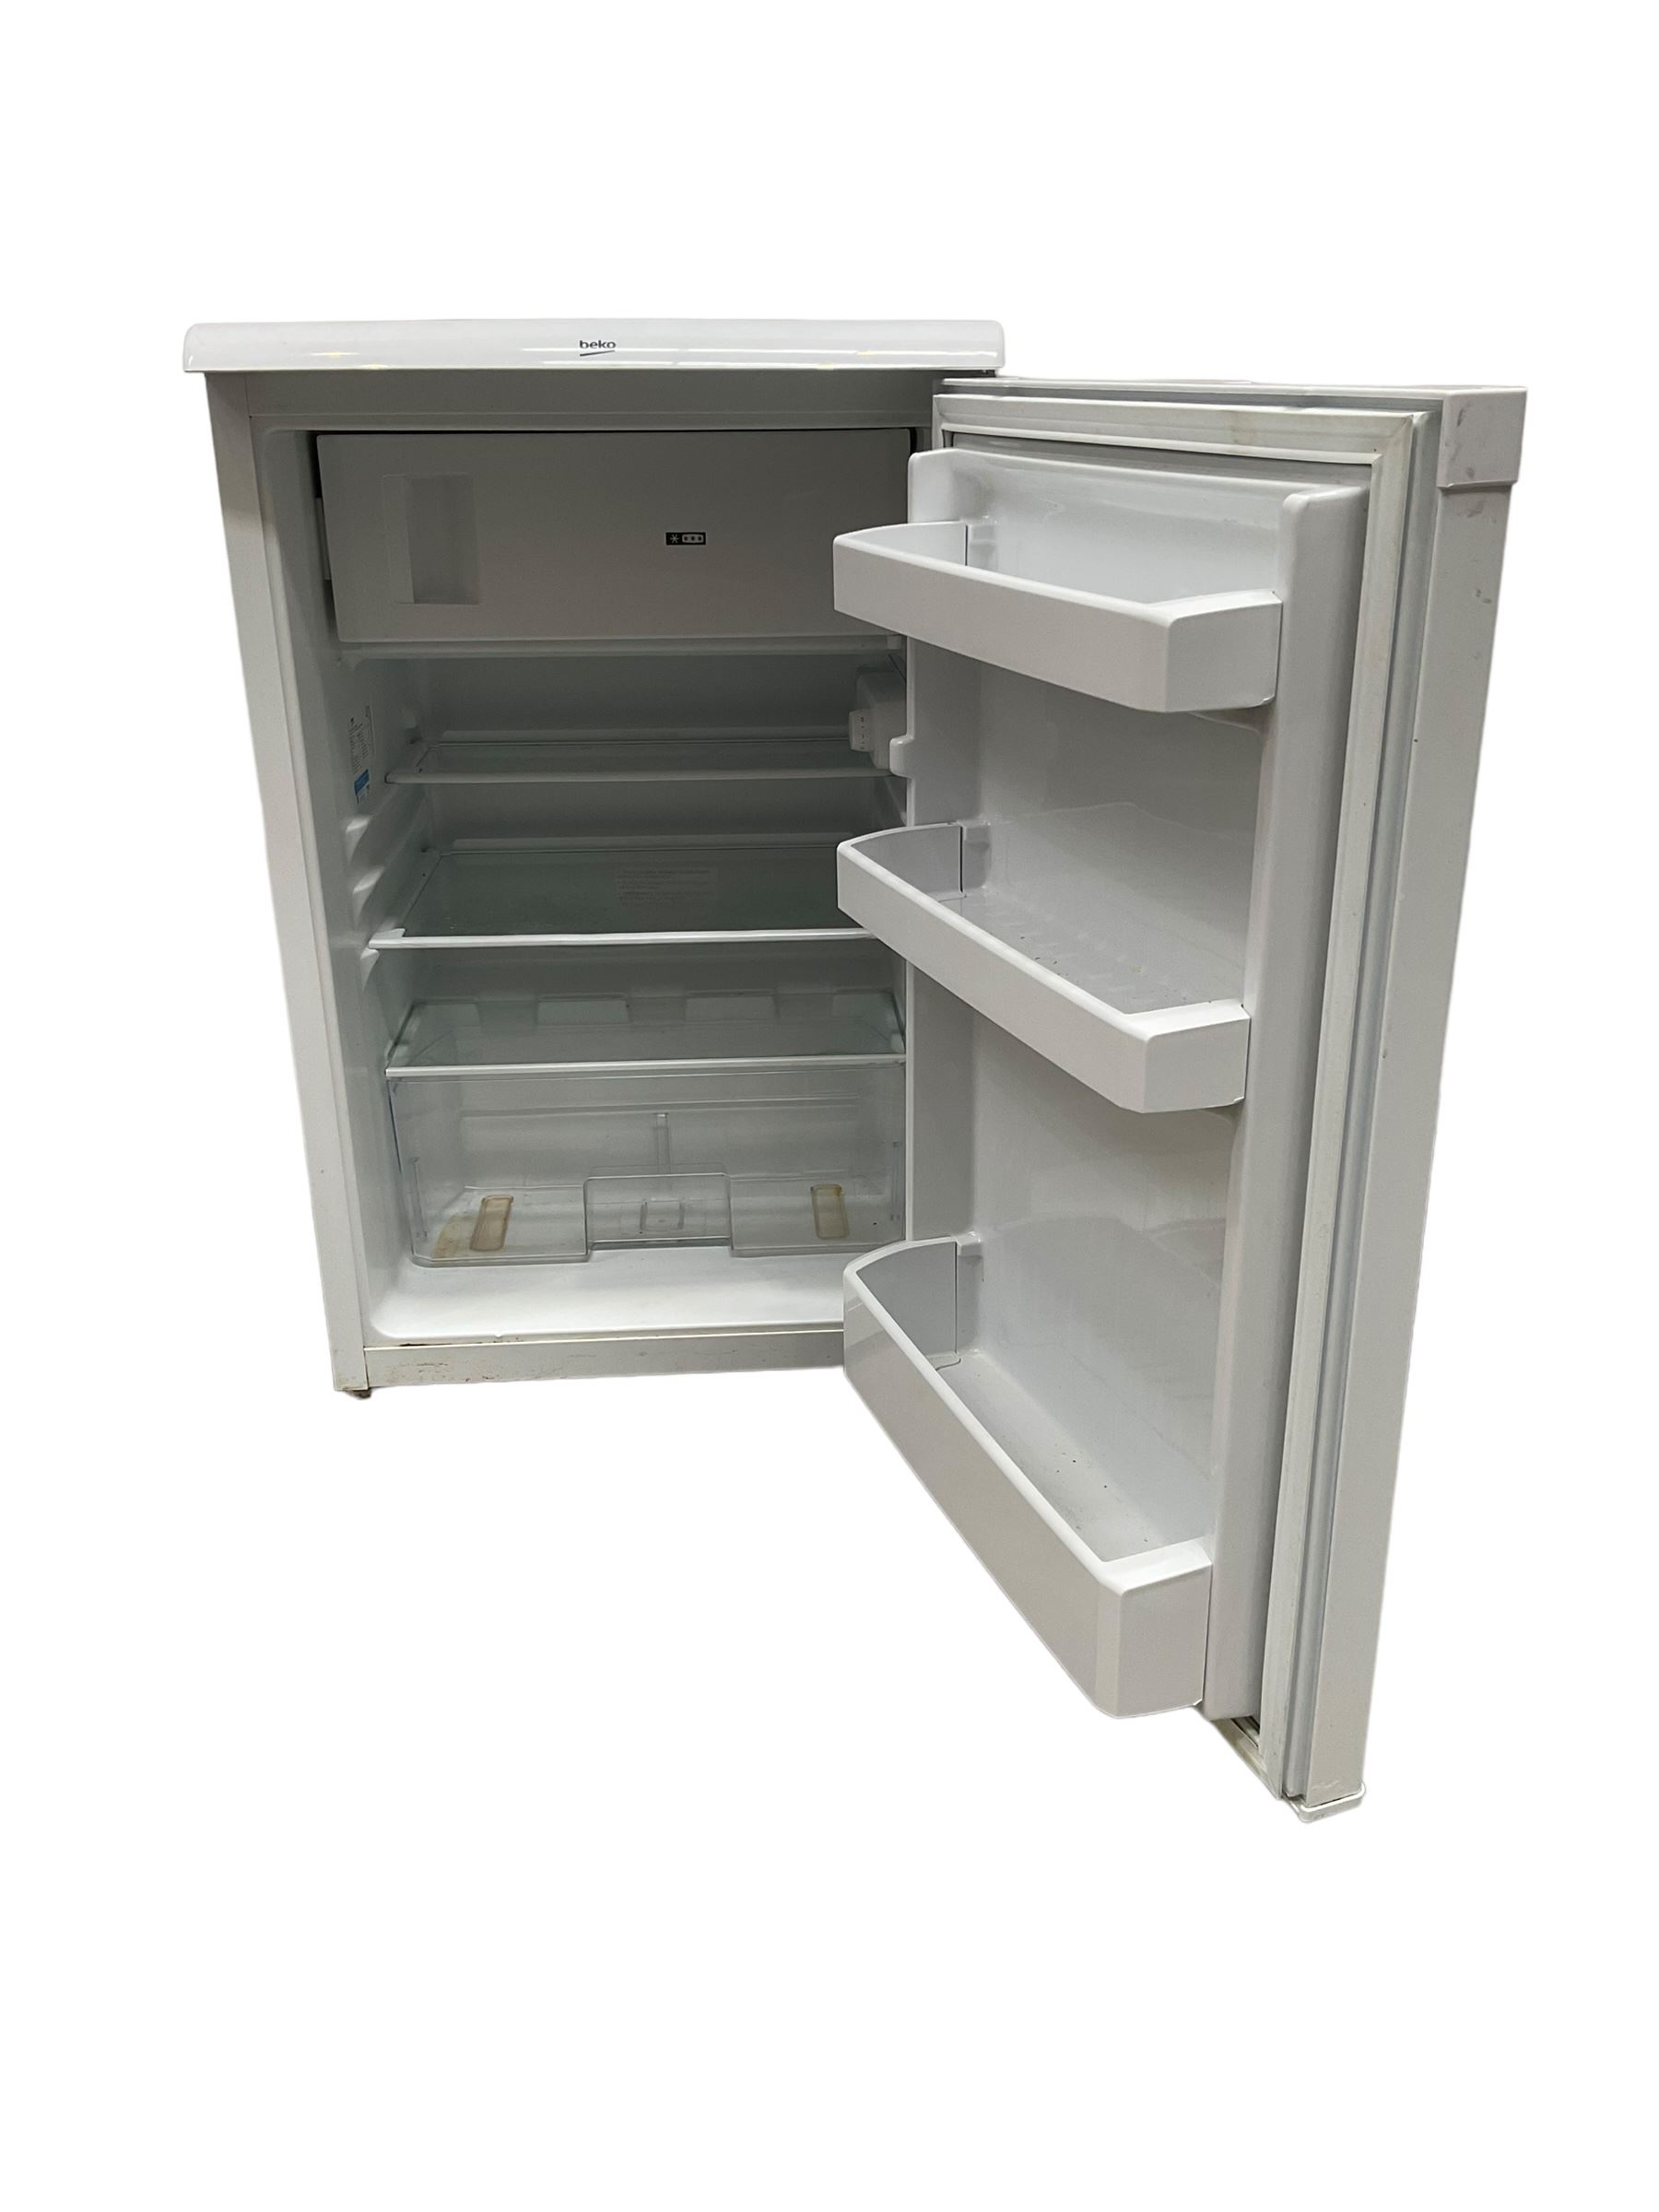 Beko under counter fridge in white - Image 2 of 2